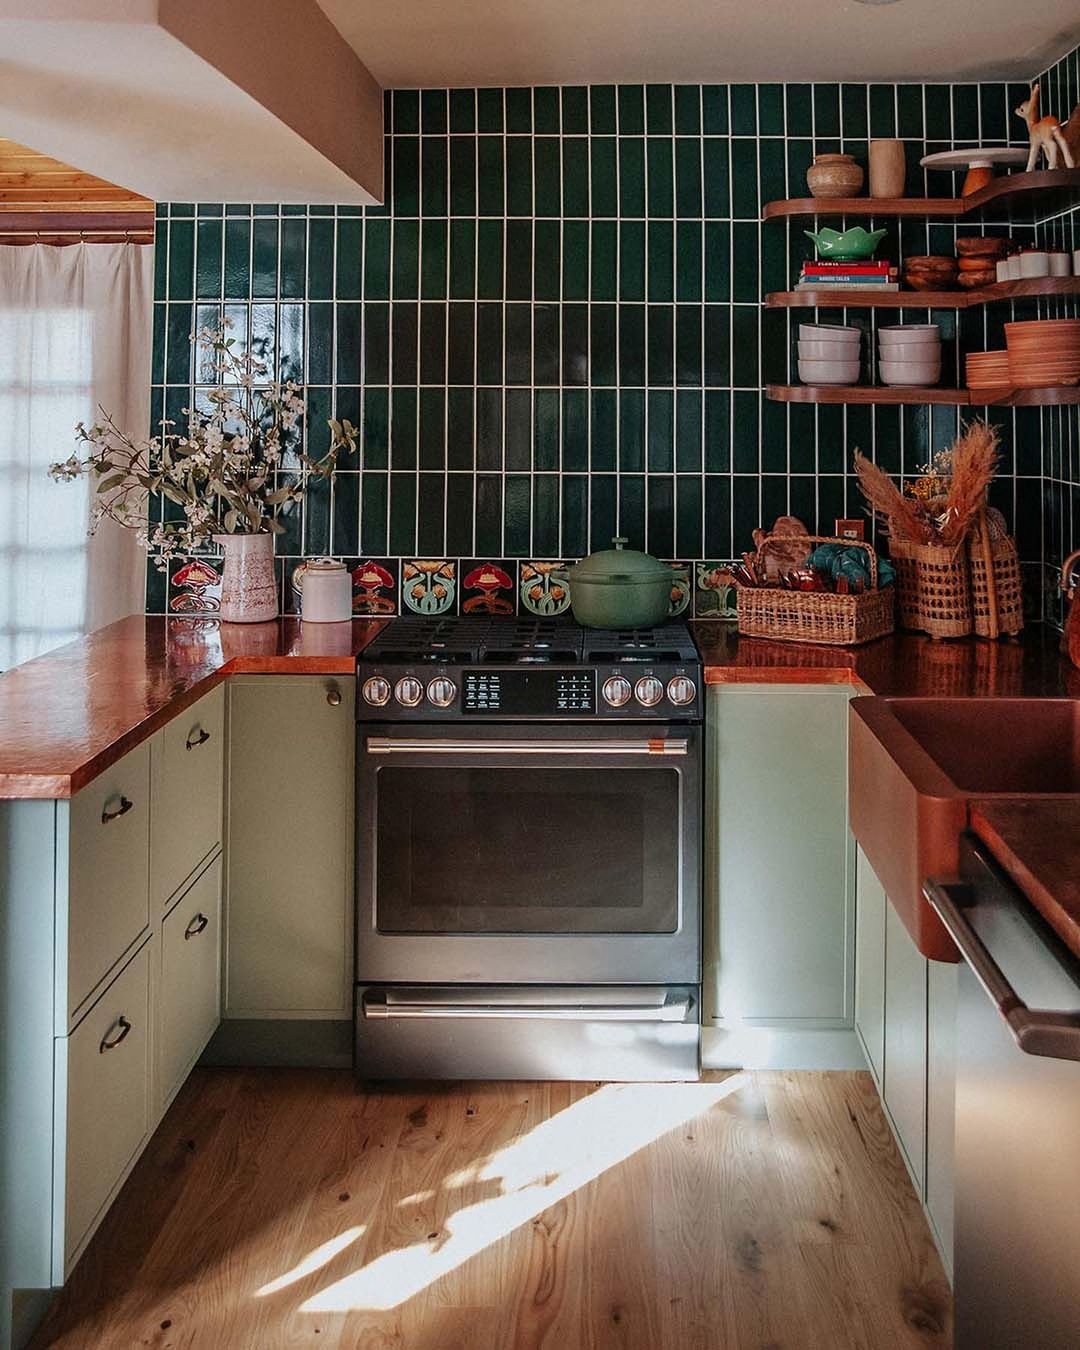 It girls - cozinha pequena, dicas de decoração, dica de organização, decor - cozinha pequena - Inverno - Street Style  - https://stealthelook.com.br